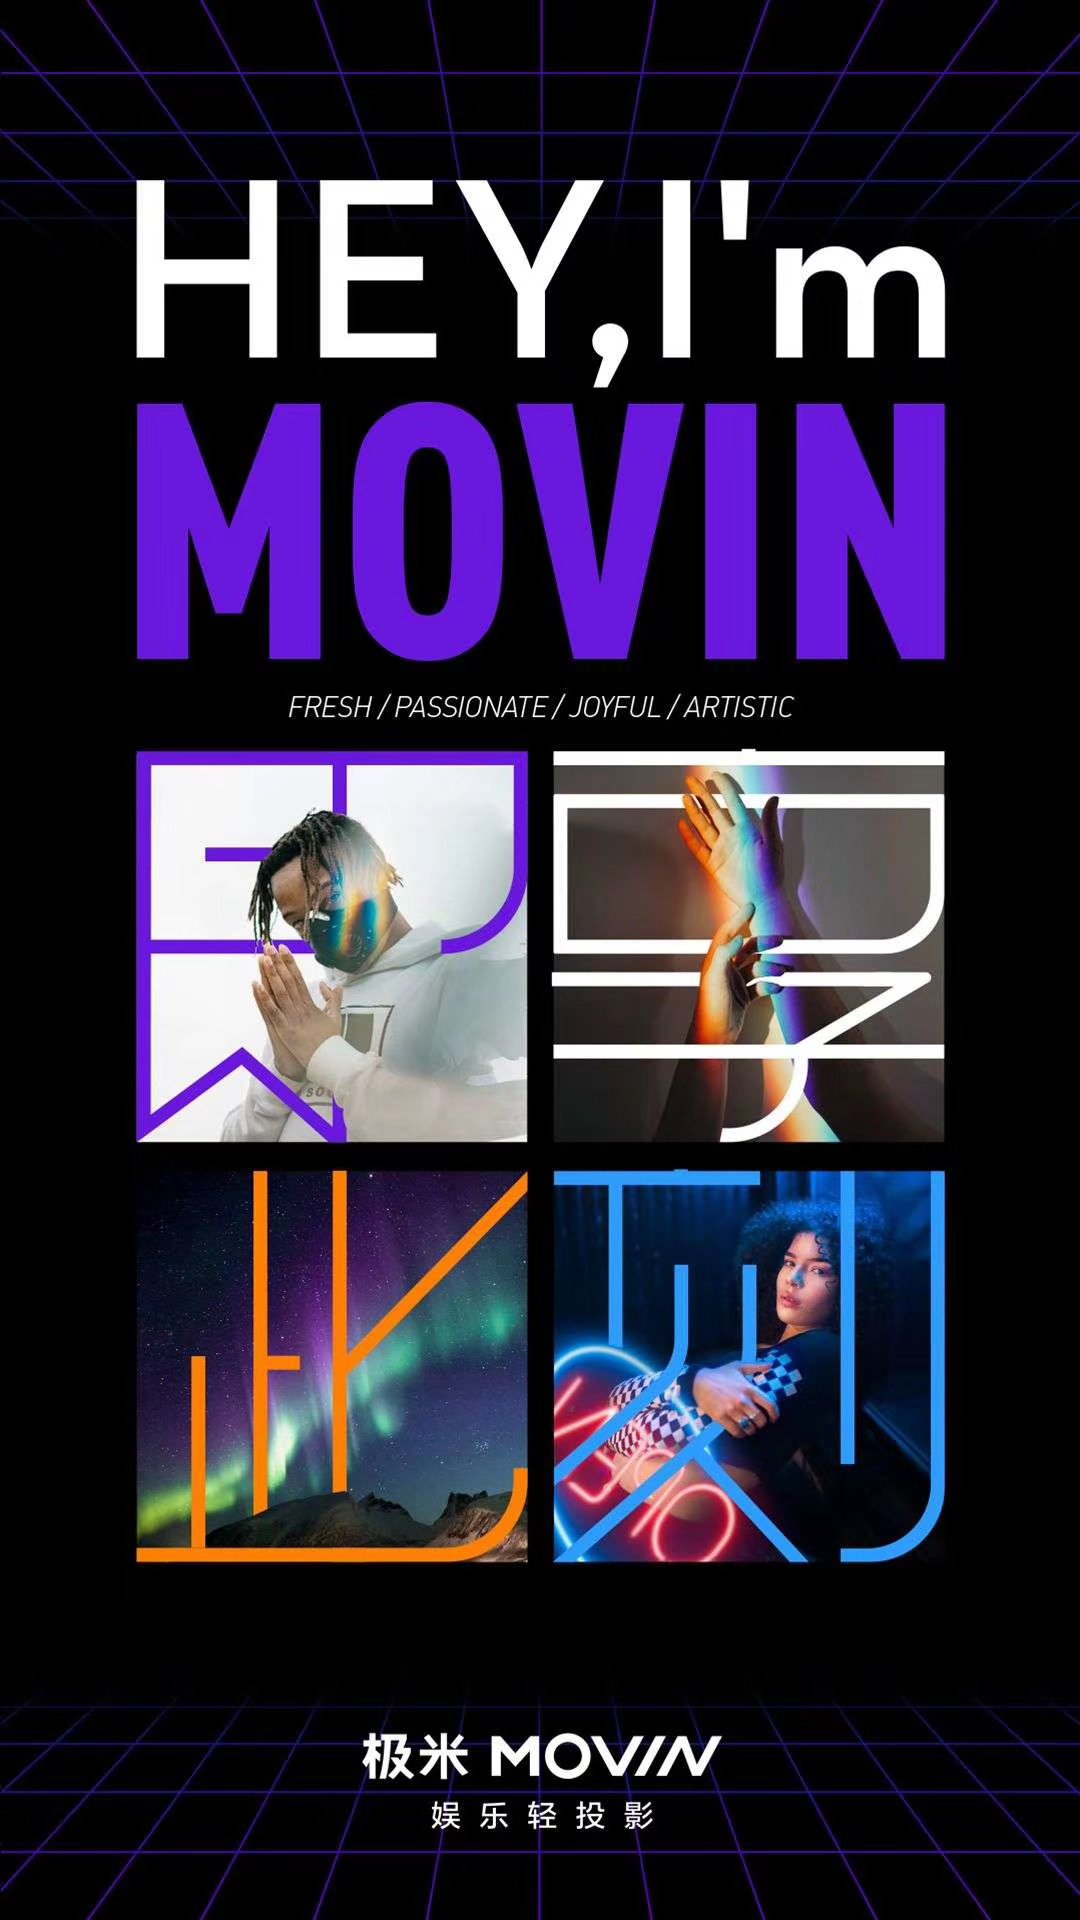 极米MOVIN全新品牌发布 定位娱乐轻投影